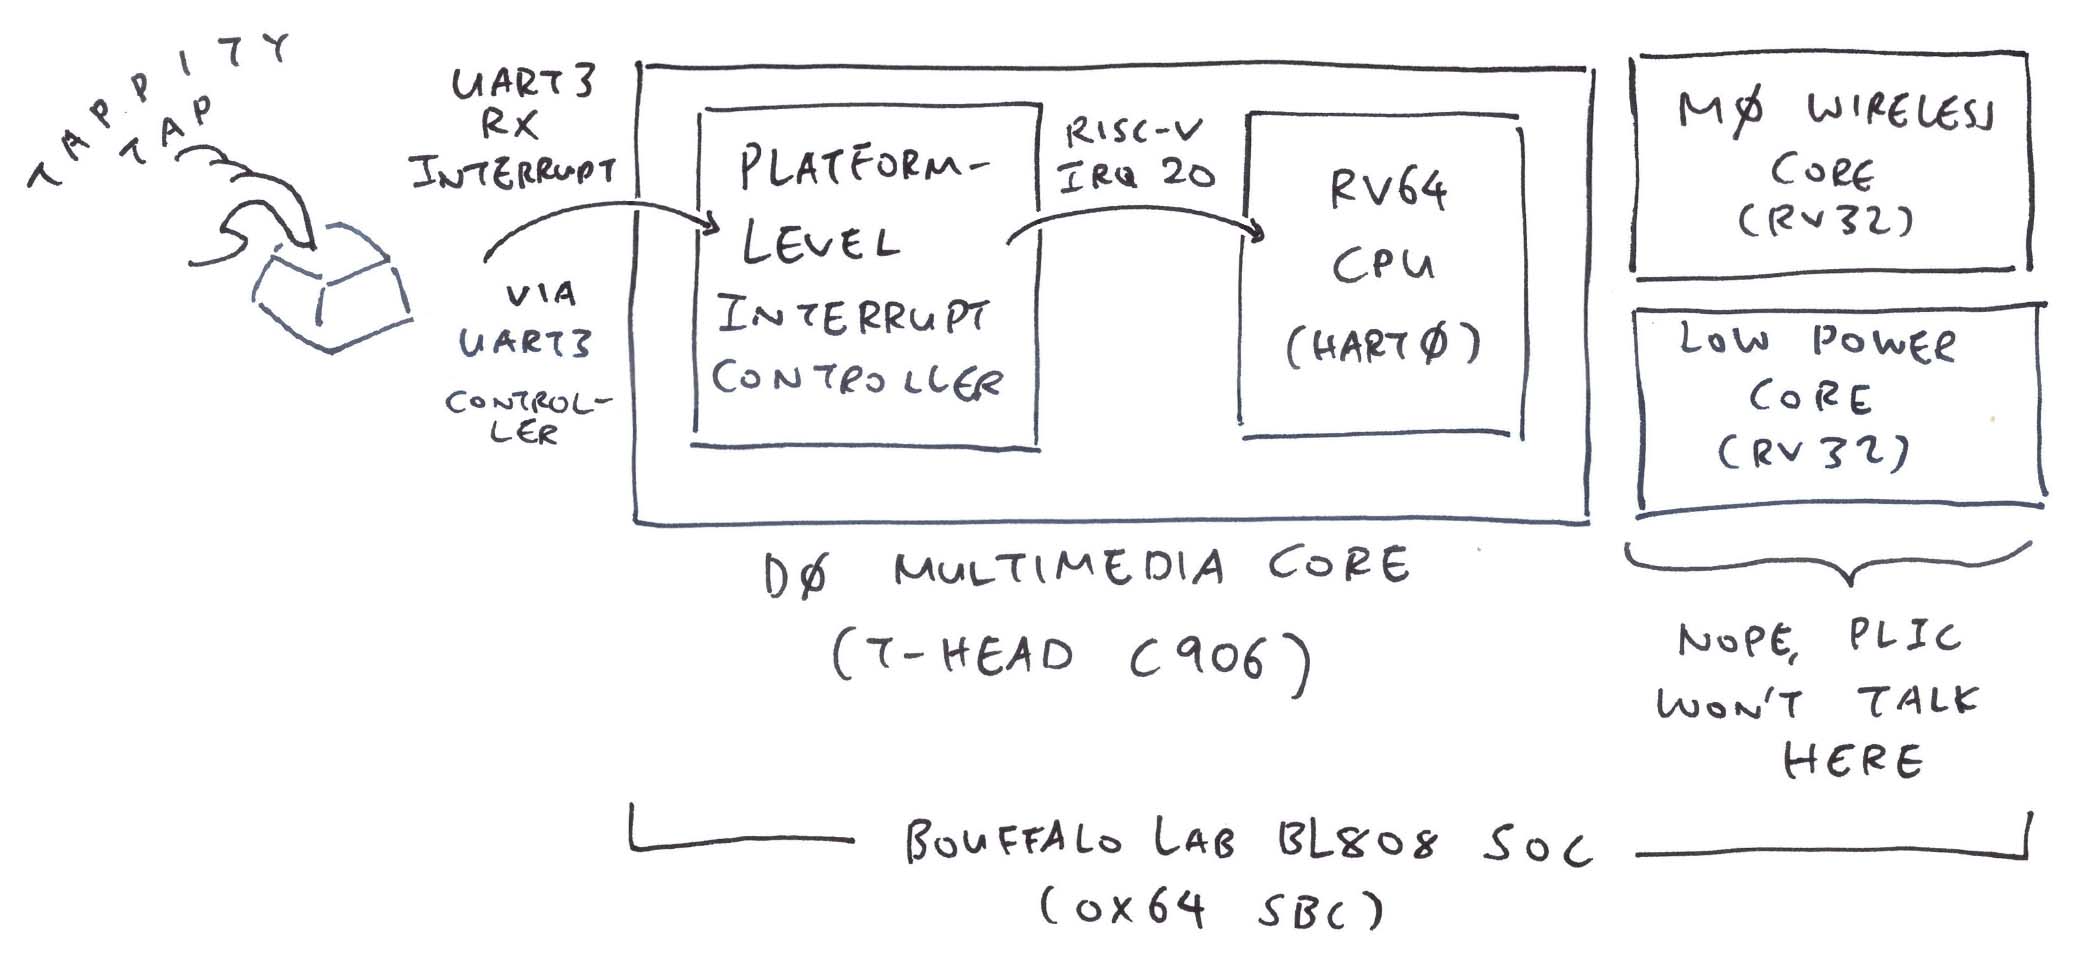 BL808 Platform-Level Interrupt Controller